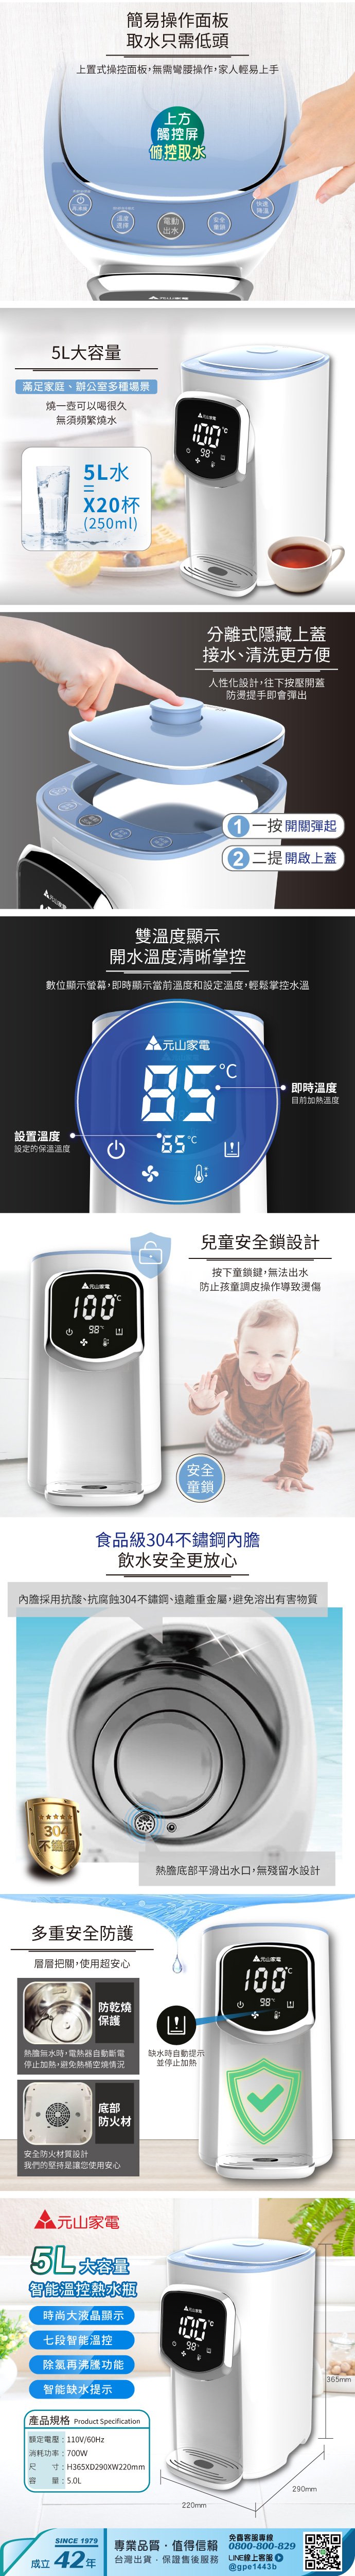 【元山】5L大容量智能溫控熱水瓶/開飲機/飲水機 YS-5505AP